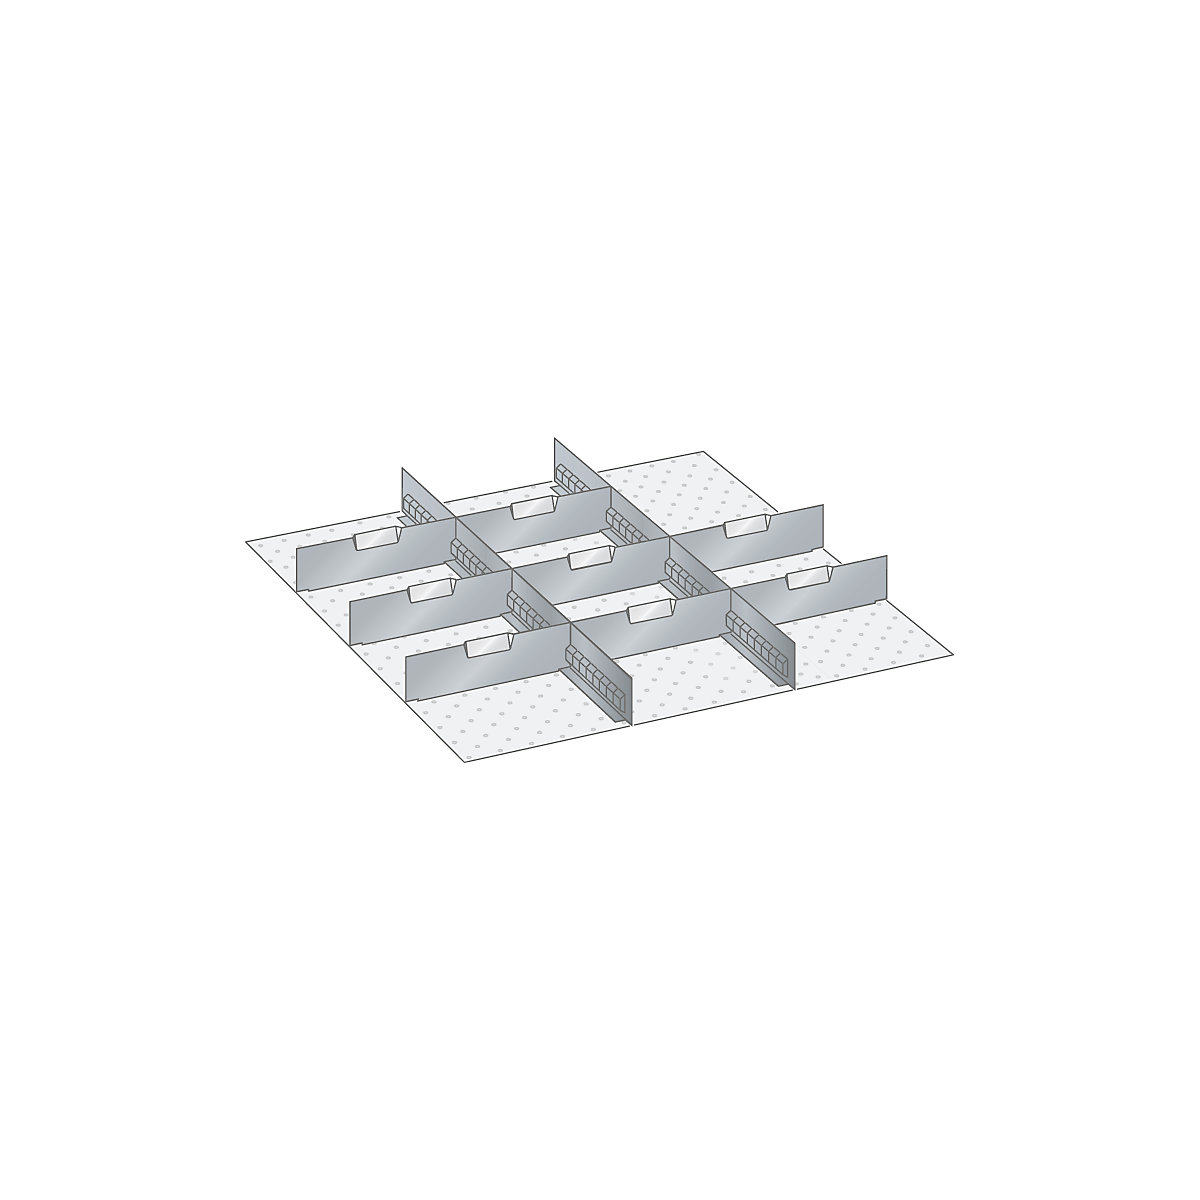 Materiaalset voor lade-indelingen – LISTA, 2 sleufwanden en 8 scheidingsschotten, 10-delig, voor fronthoogte 200 mm-3